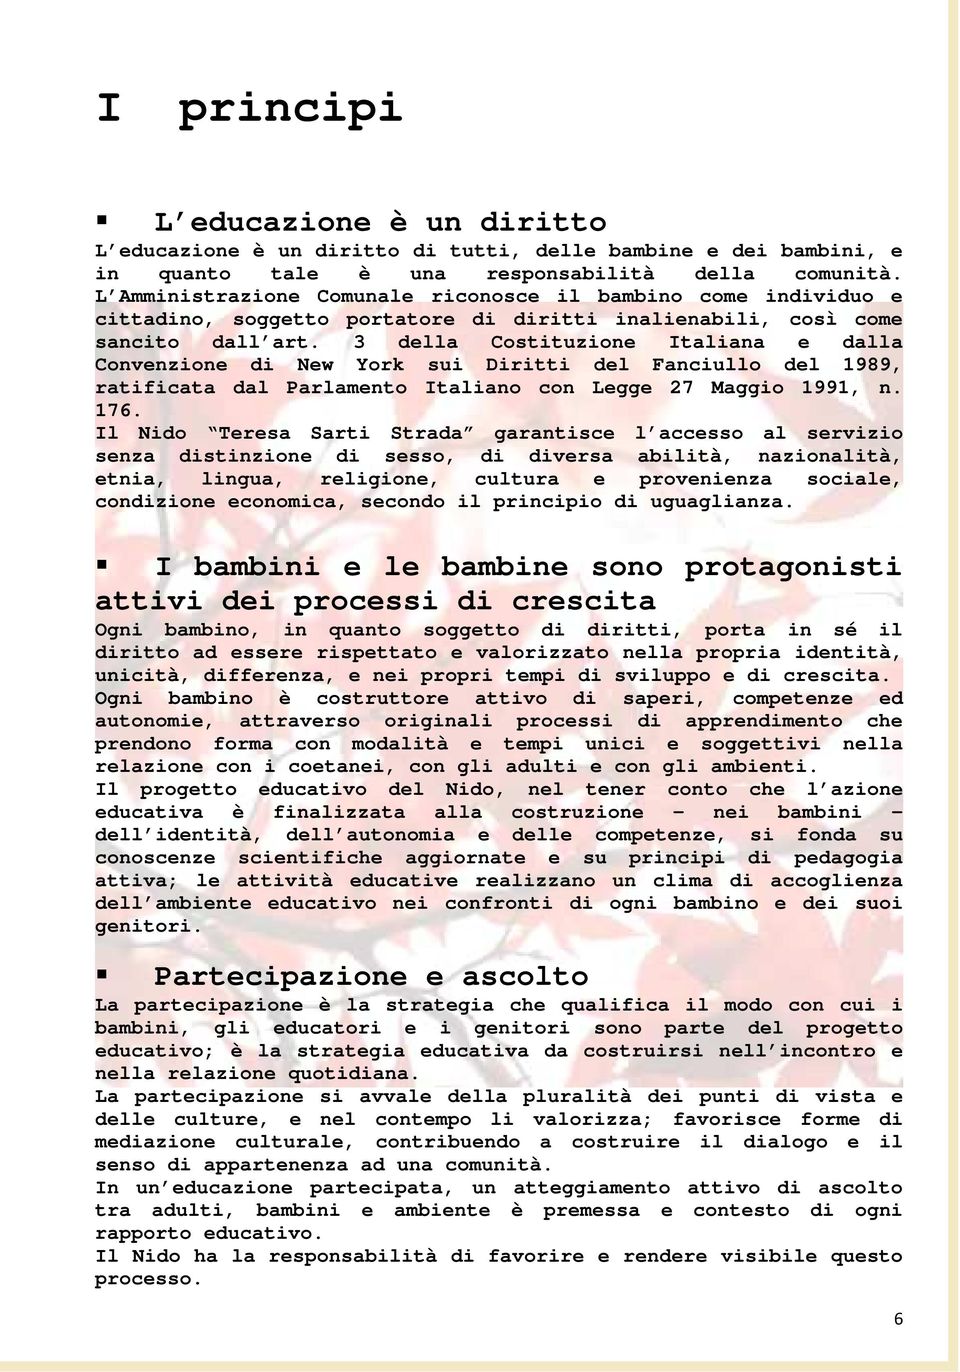 3 della Costituzione Italiana e dalla Convenzione di New York sui Diritti del Fanciullo del 1989, ratificata dal Parlamento Italiano con Legge 27 Maggio 1991, n. 176.